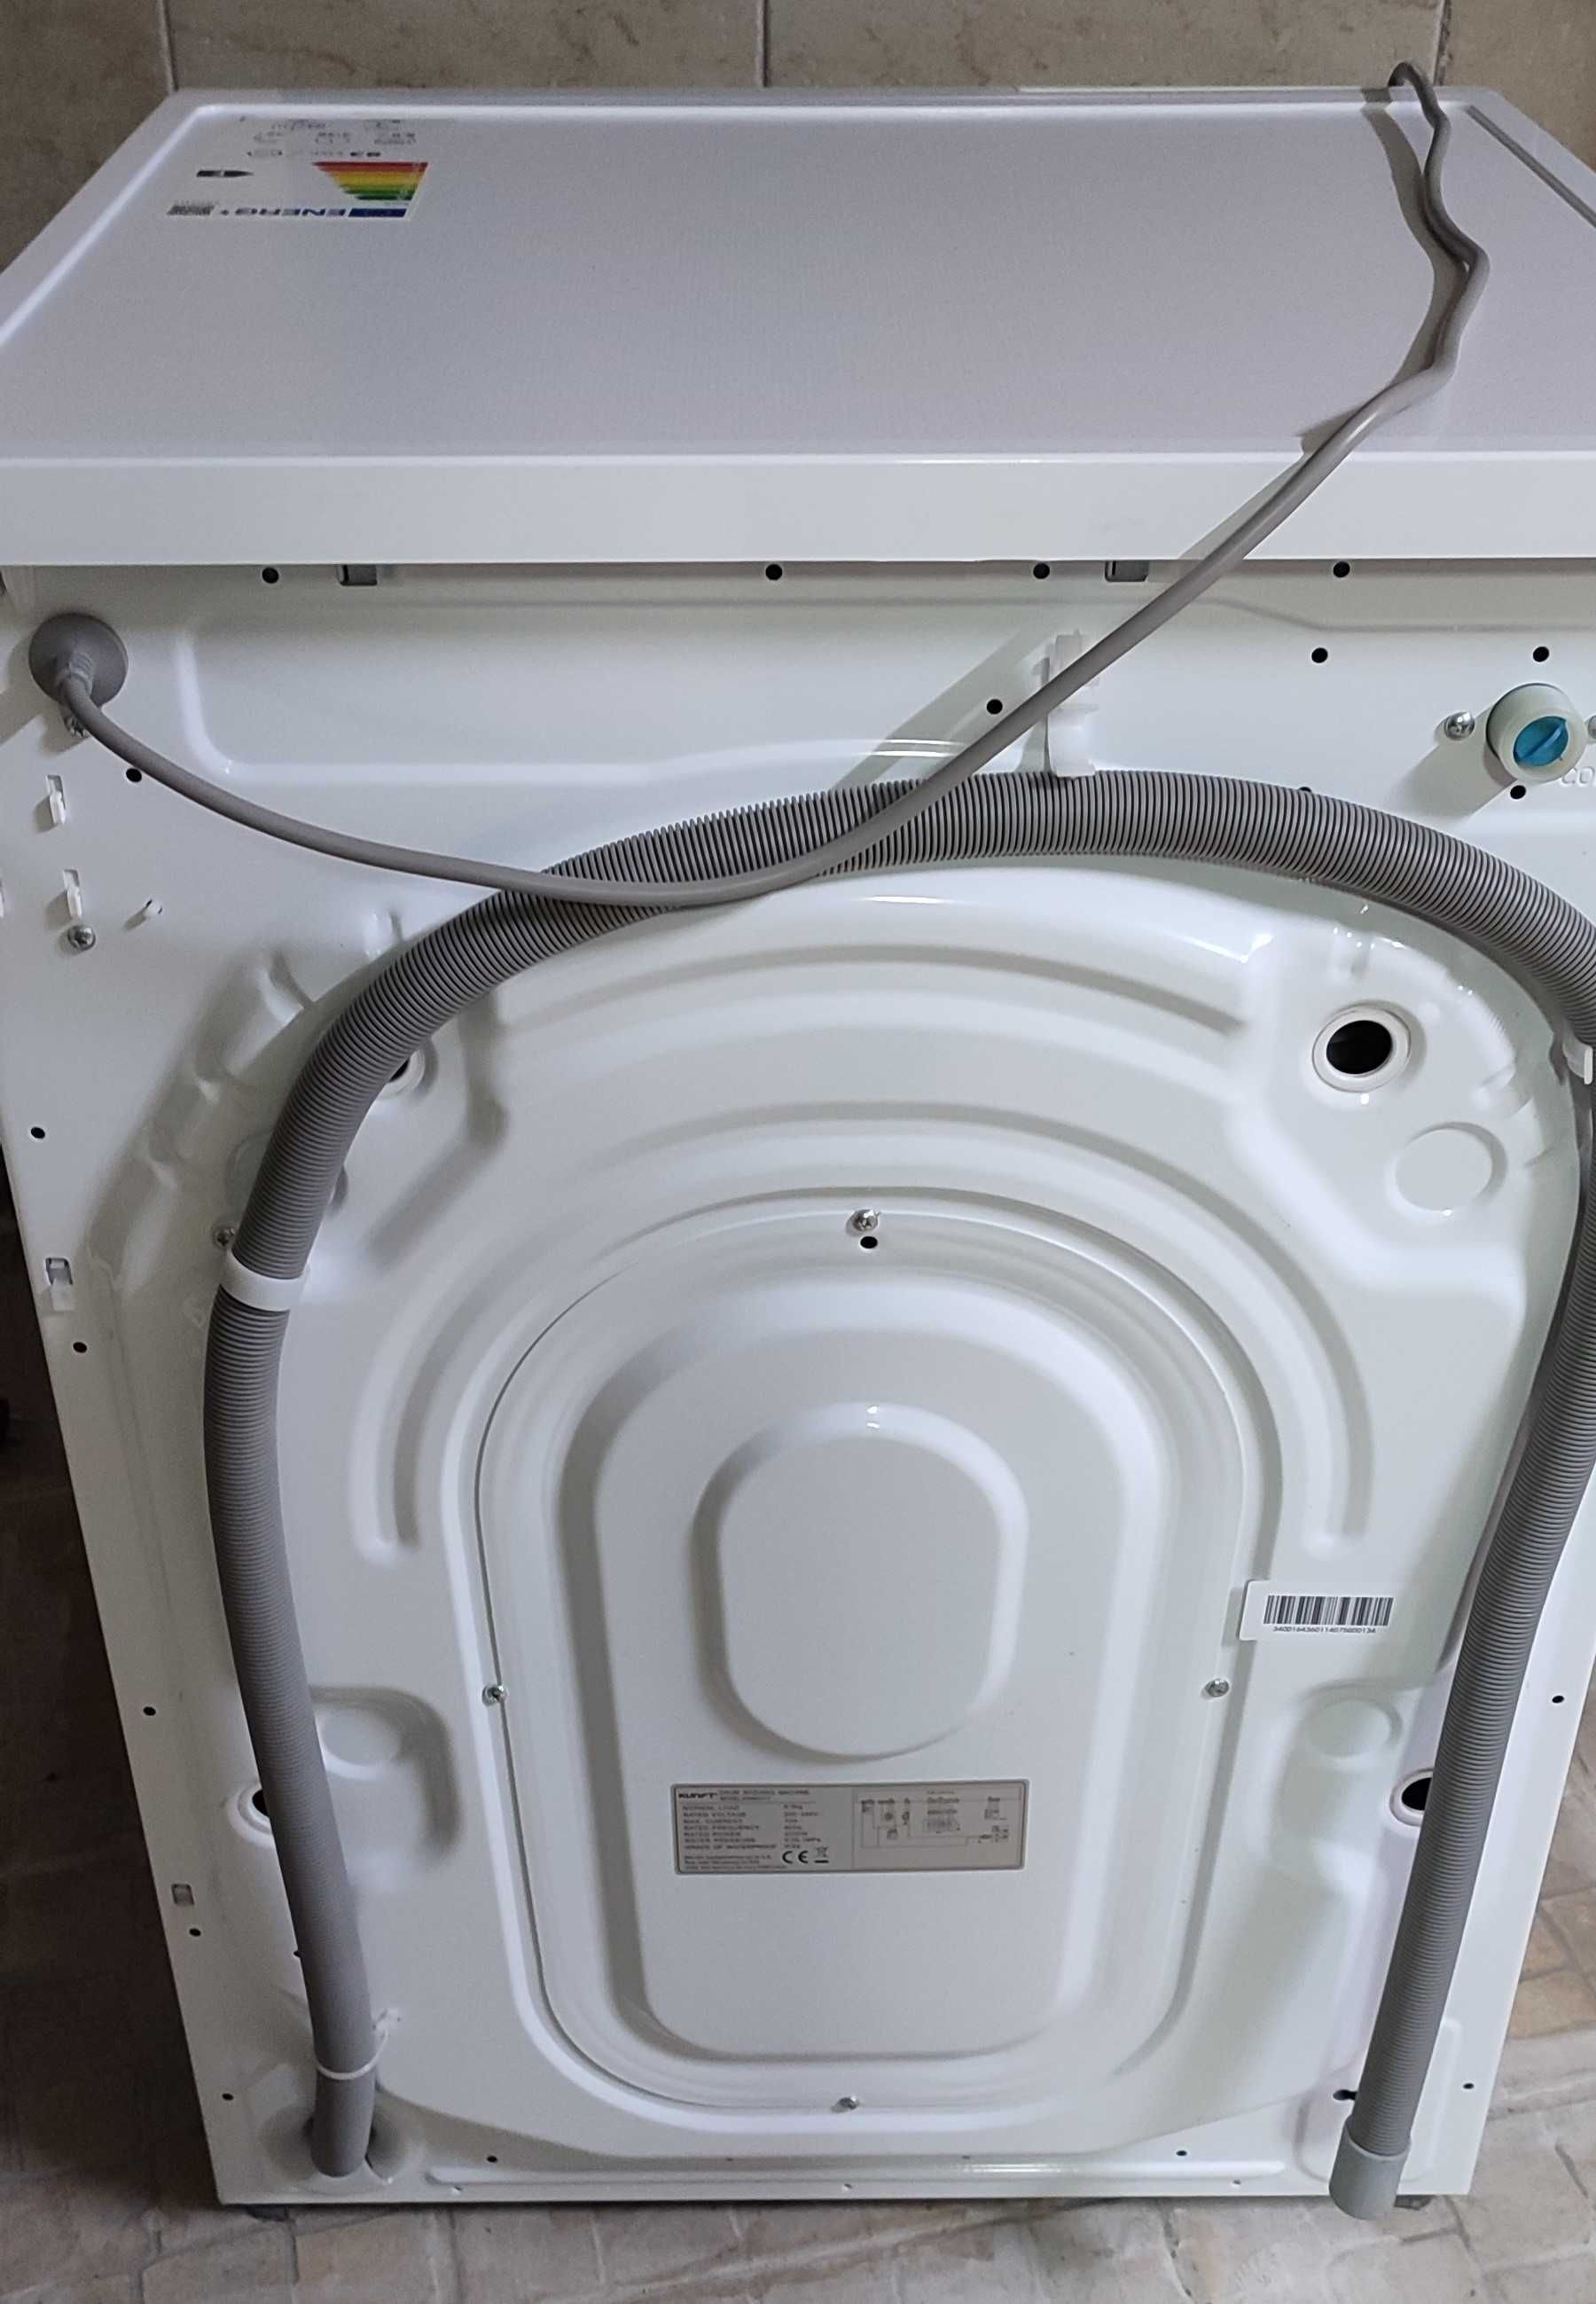 Máquina de lavar roupa - Kunft kwm5317 - 8Kg